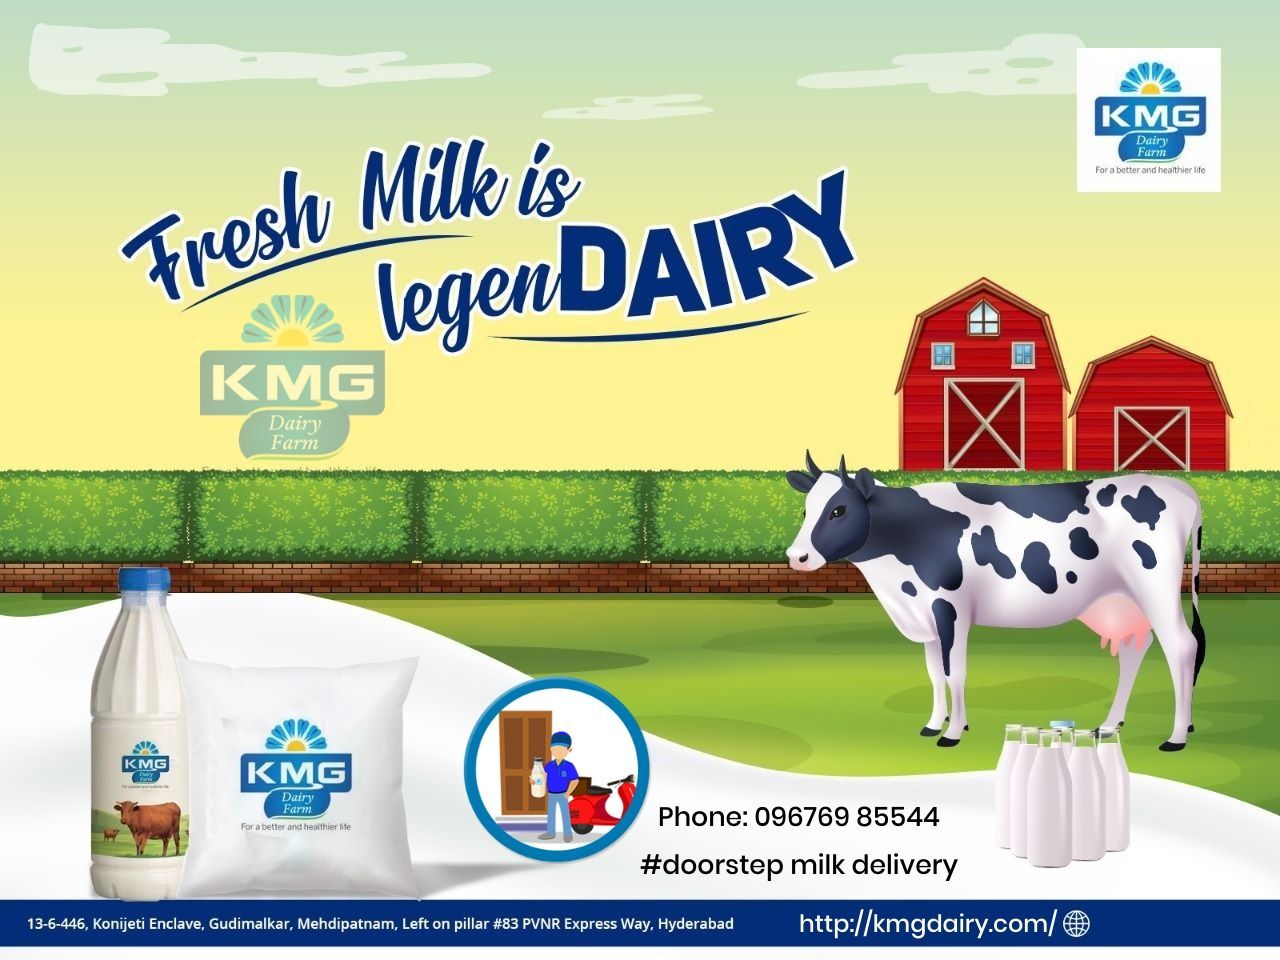 100% Farm Fresh milk and dairy products: KMG Dairy Farm